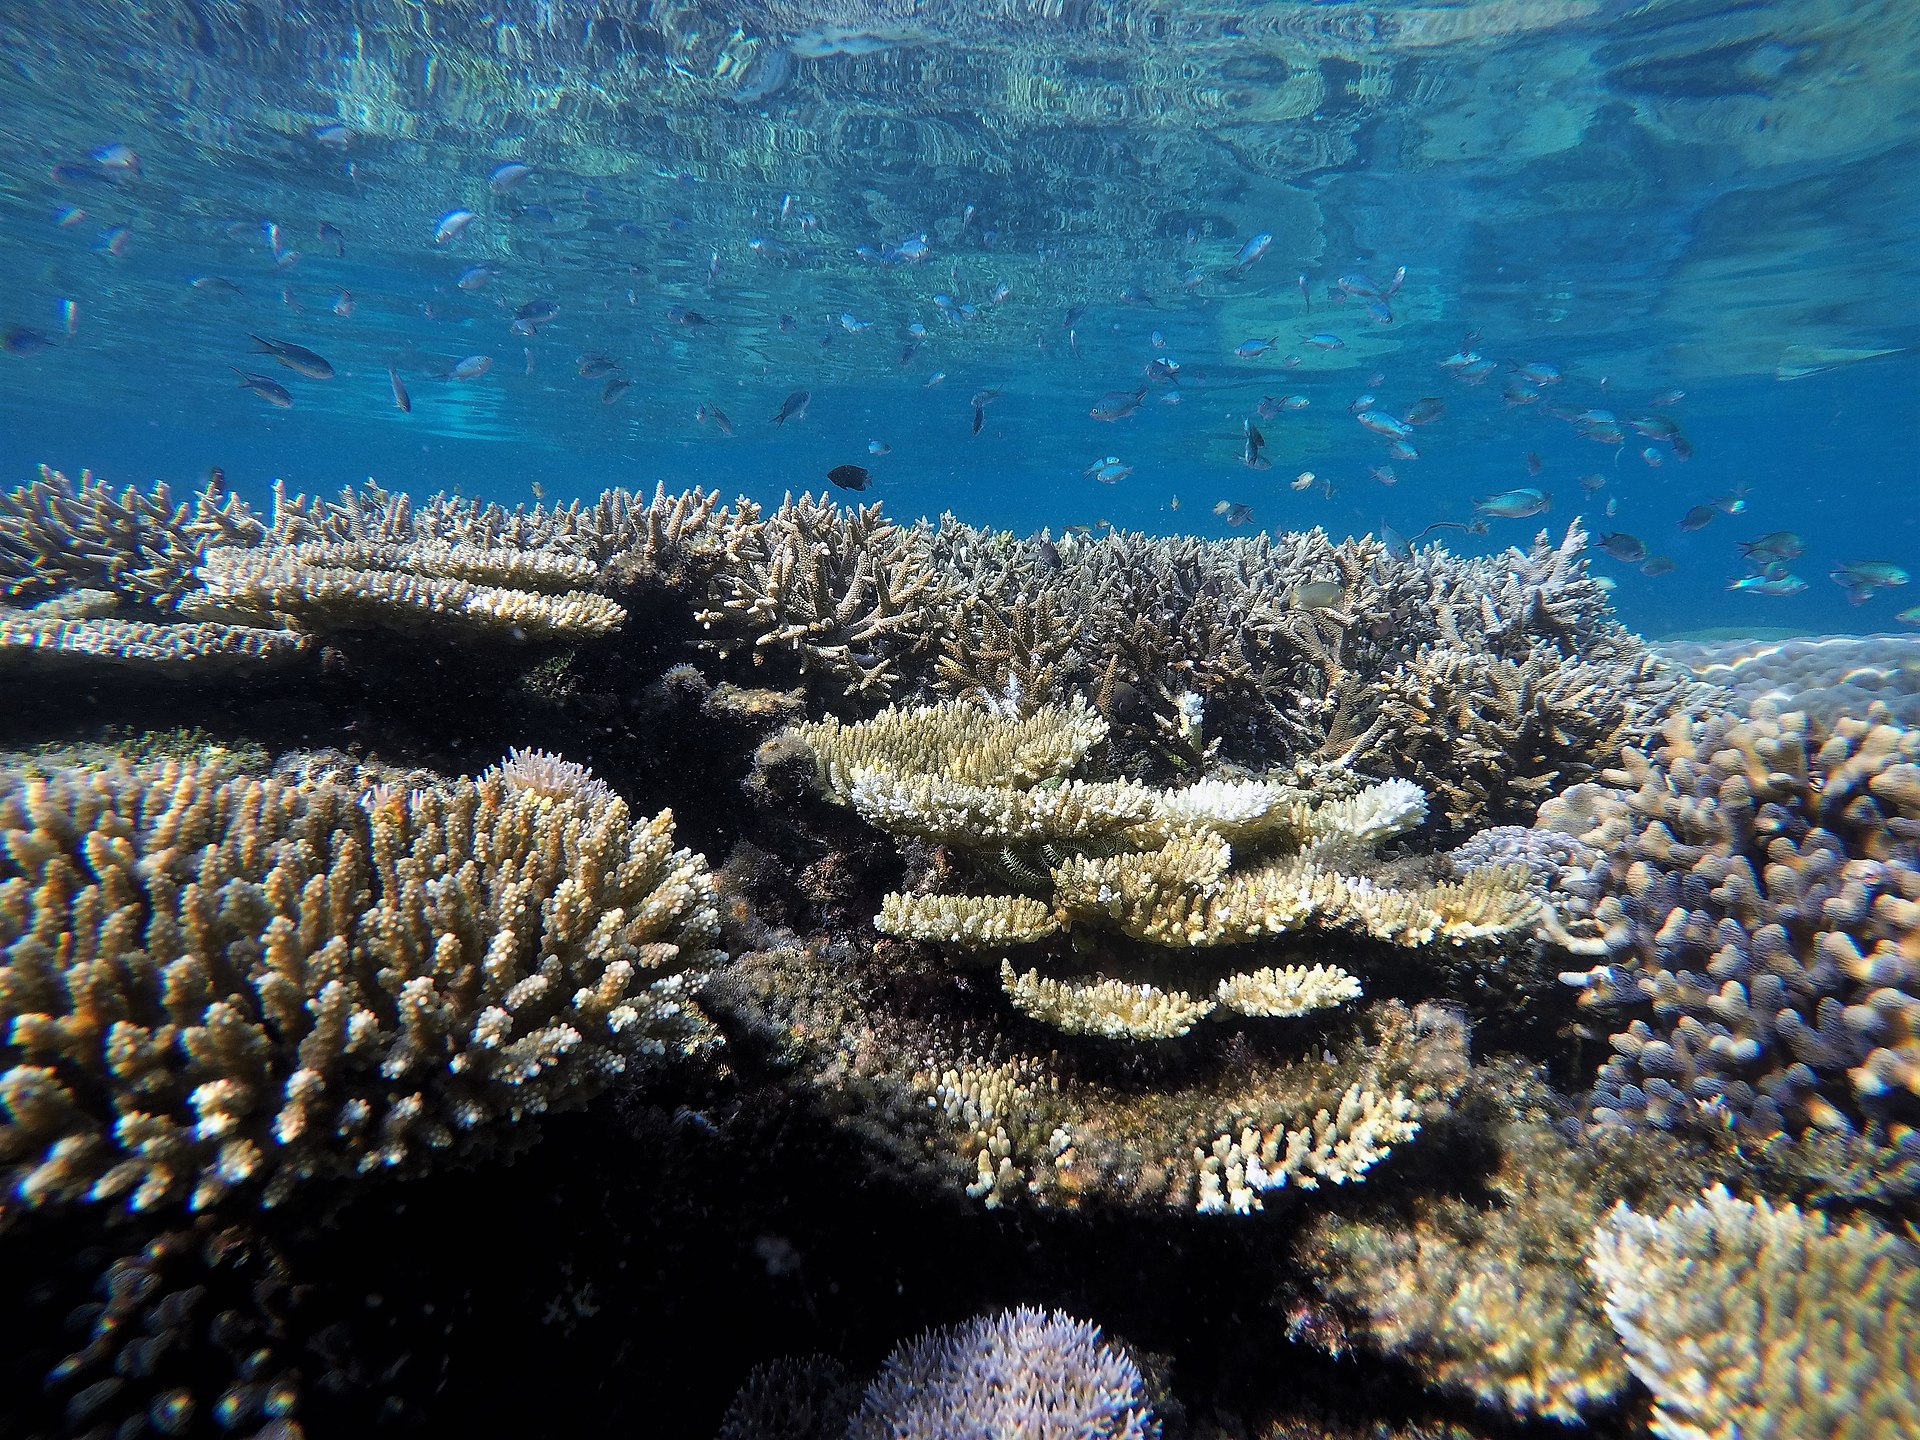 Krása a pestrost ekologických společenstev současných korálových útesů povstala zřejmě z Karnské pluviální události v období pozdního triasu. Vedla k ní významná změna klimatu a zároveň chemismu tehdejších oceánů, která odstartovala doslova expanzivn